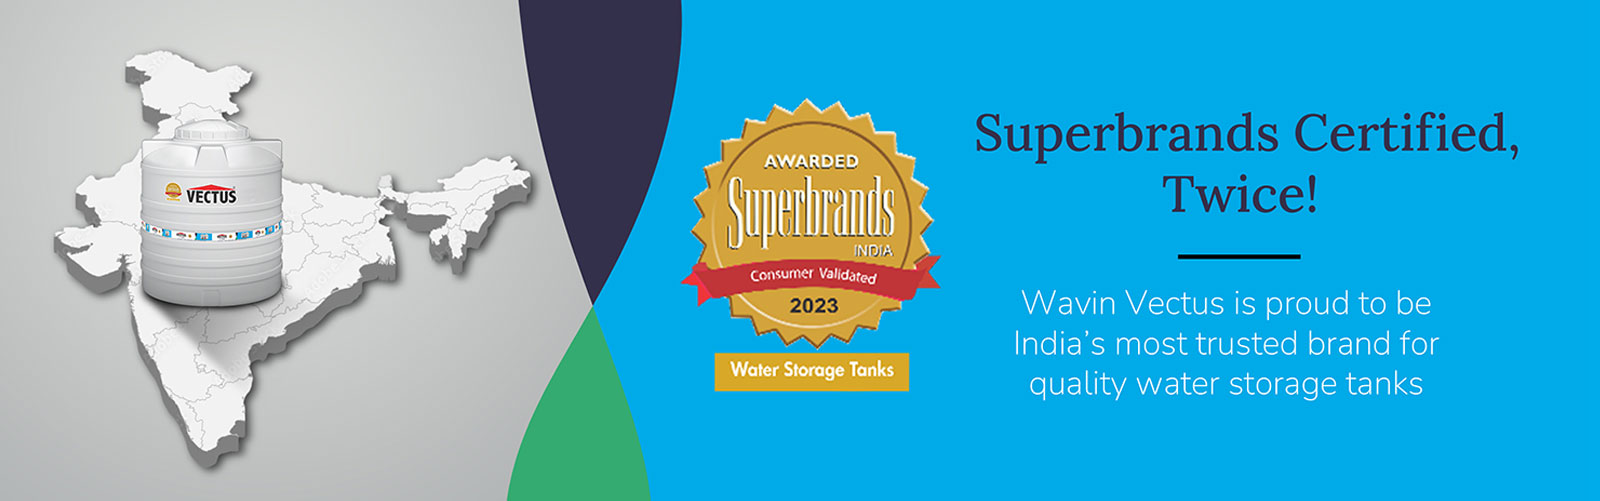 Vectus - Superbrands India Award